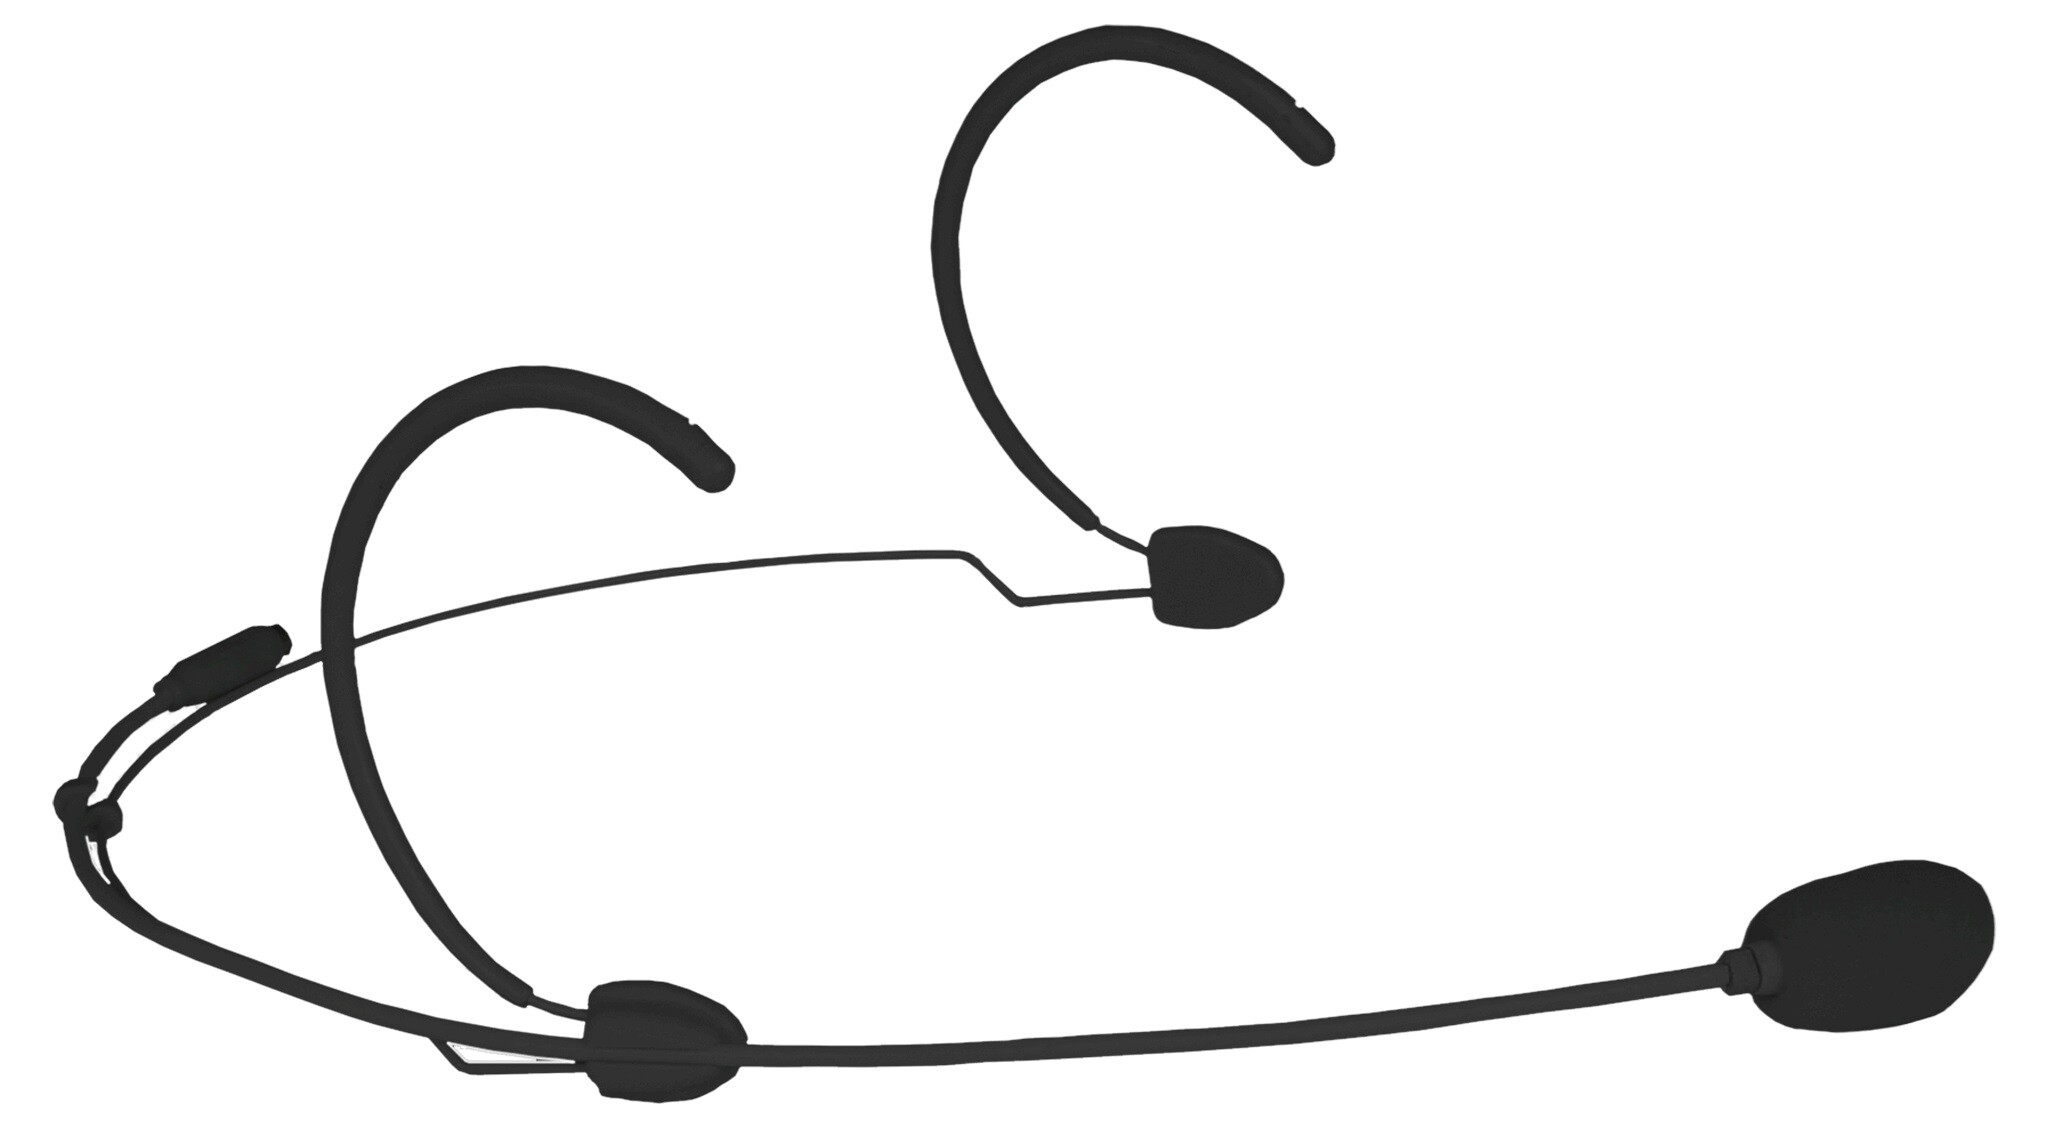 Audac-CMX826-B-Double-Ear-Headset-Mikrofon-Niere-mit-Windschutz-4xAnschluss-Adapter-1-2m-Kabel-schwarz